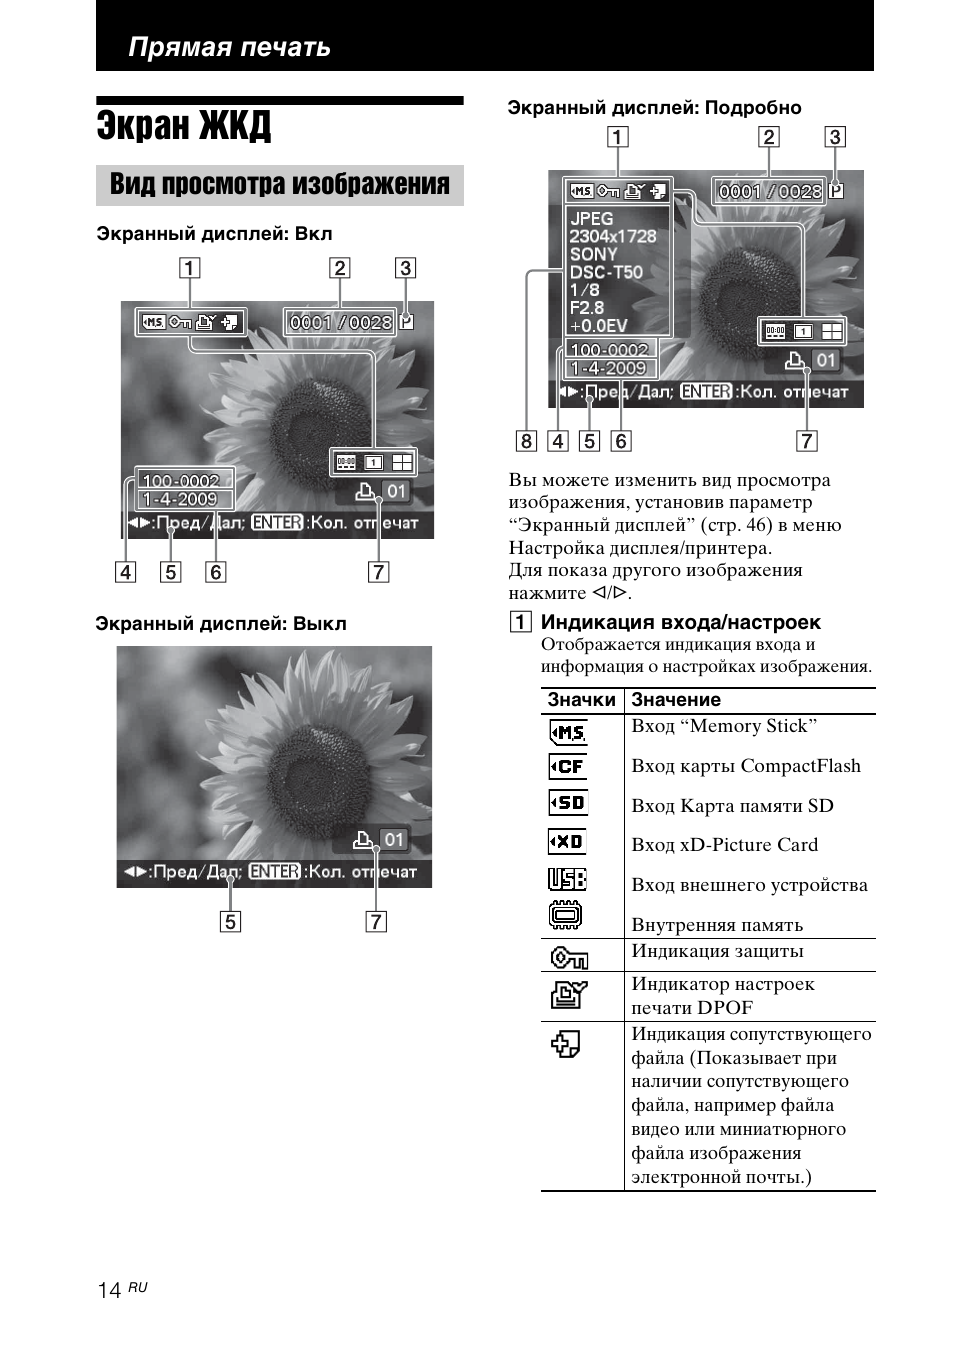 Прямая печать, Экран жкд, Вид просмотра изображения | Инструкция по эксплуатации Sony DPP-FP97 | Страница 14 / 92